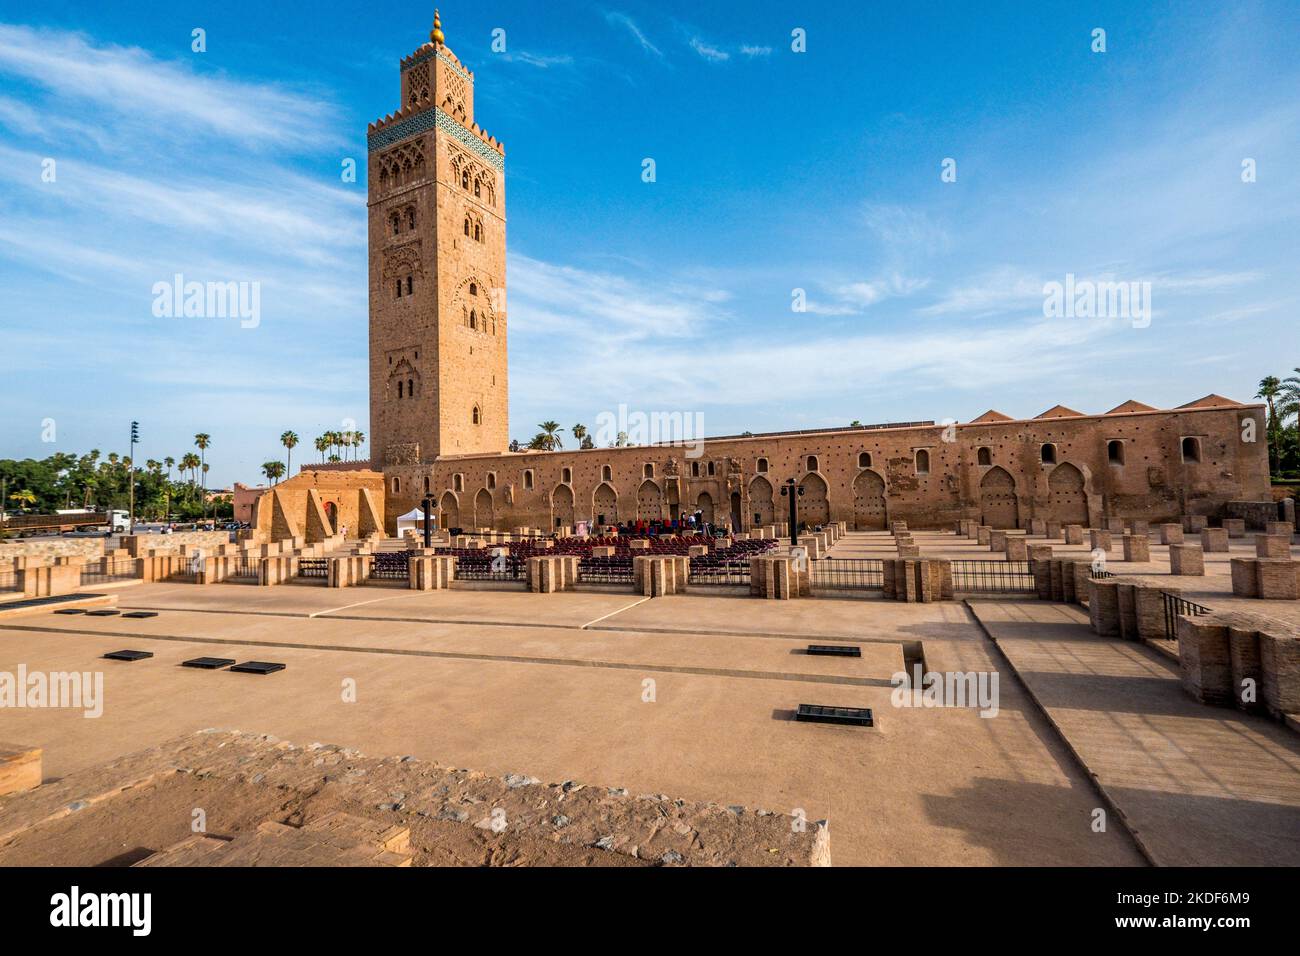 Marrakech, Morocco, The Kutubiyya Mosque / Koutoubia Mosque Stock Photo